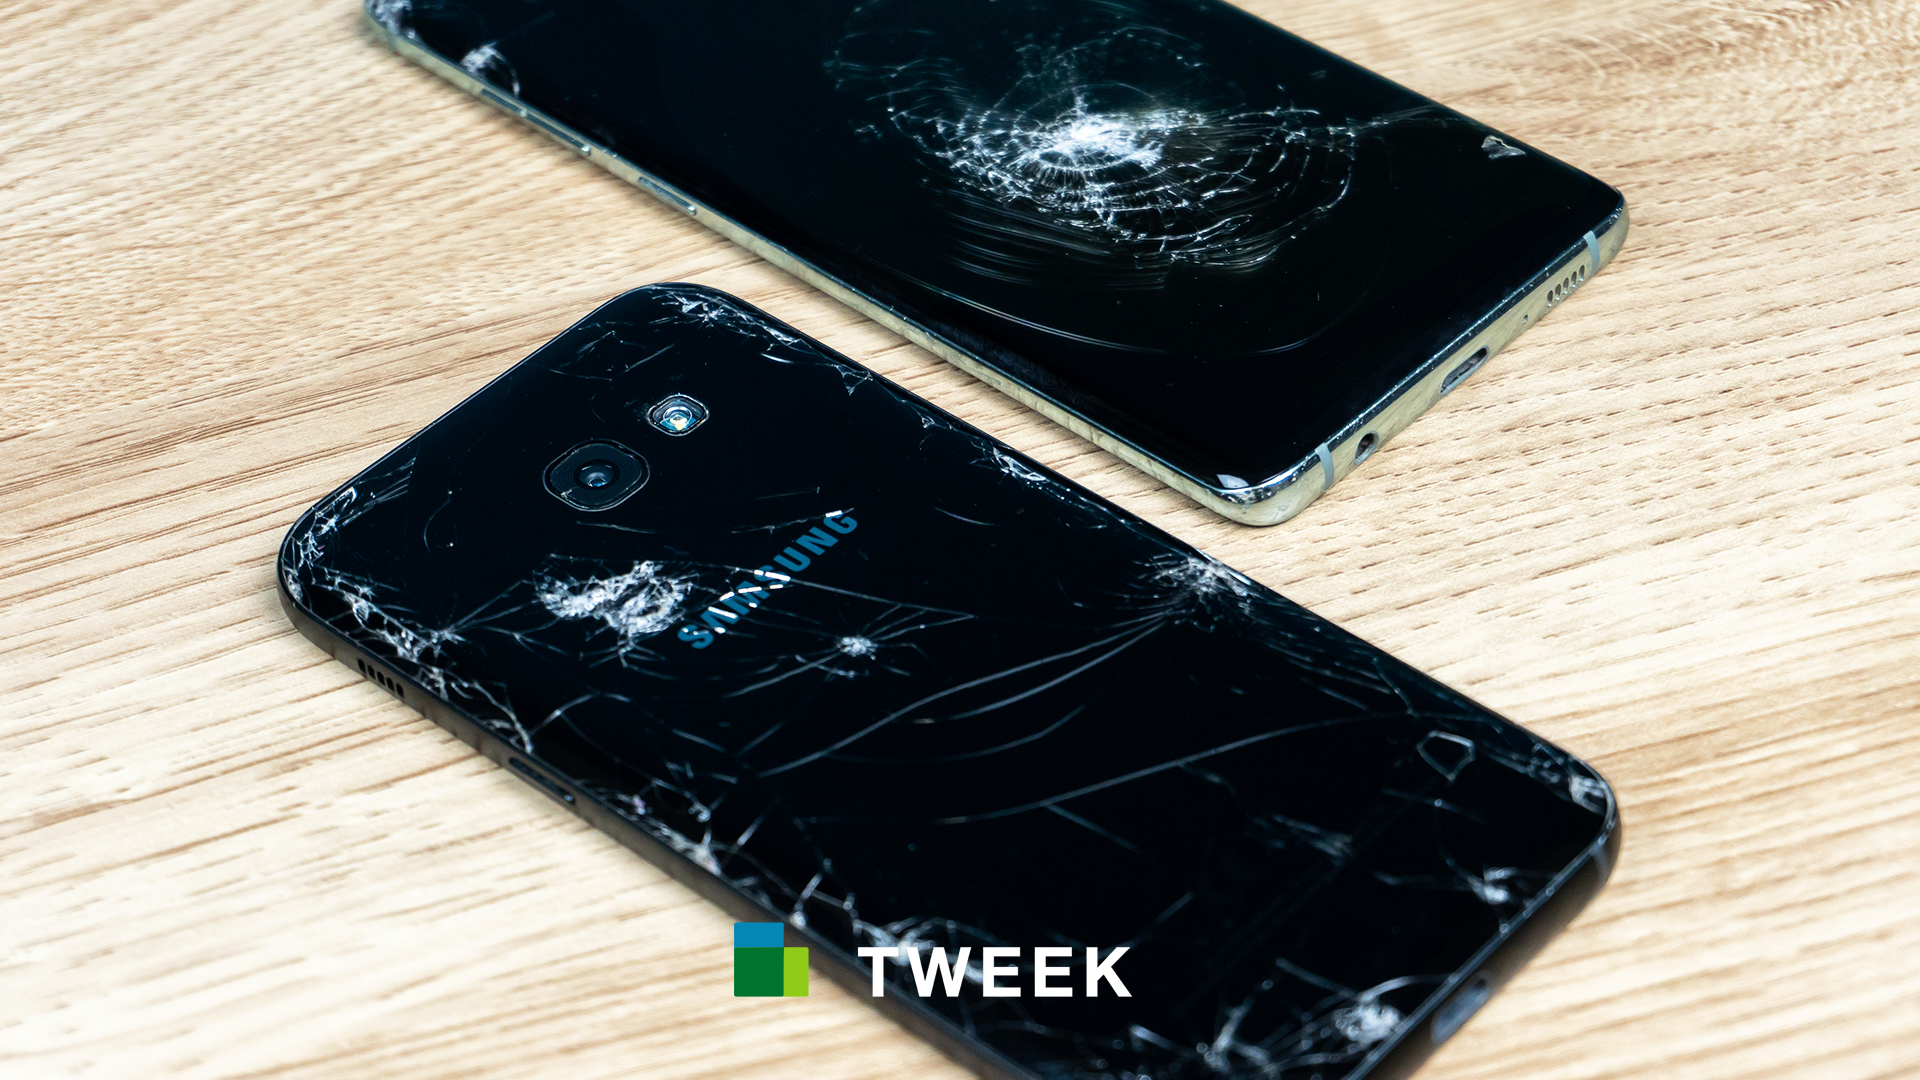 Samsung kapot? Wij repareren het snel voor je!